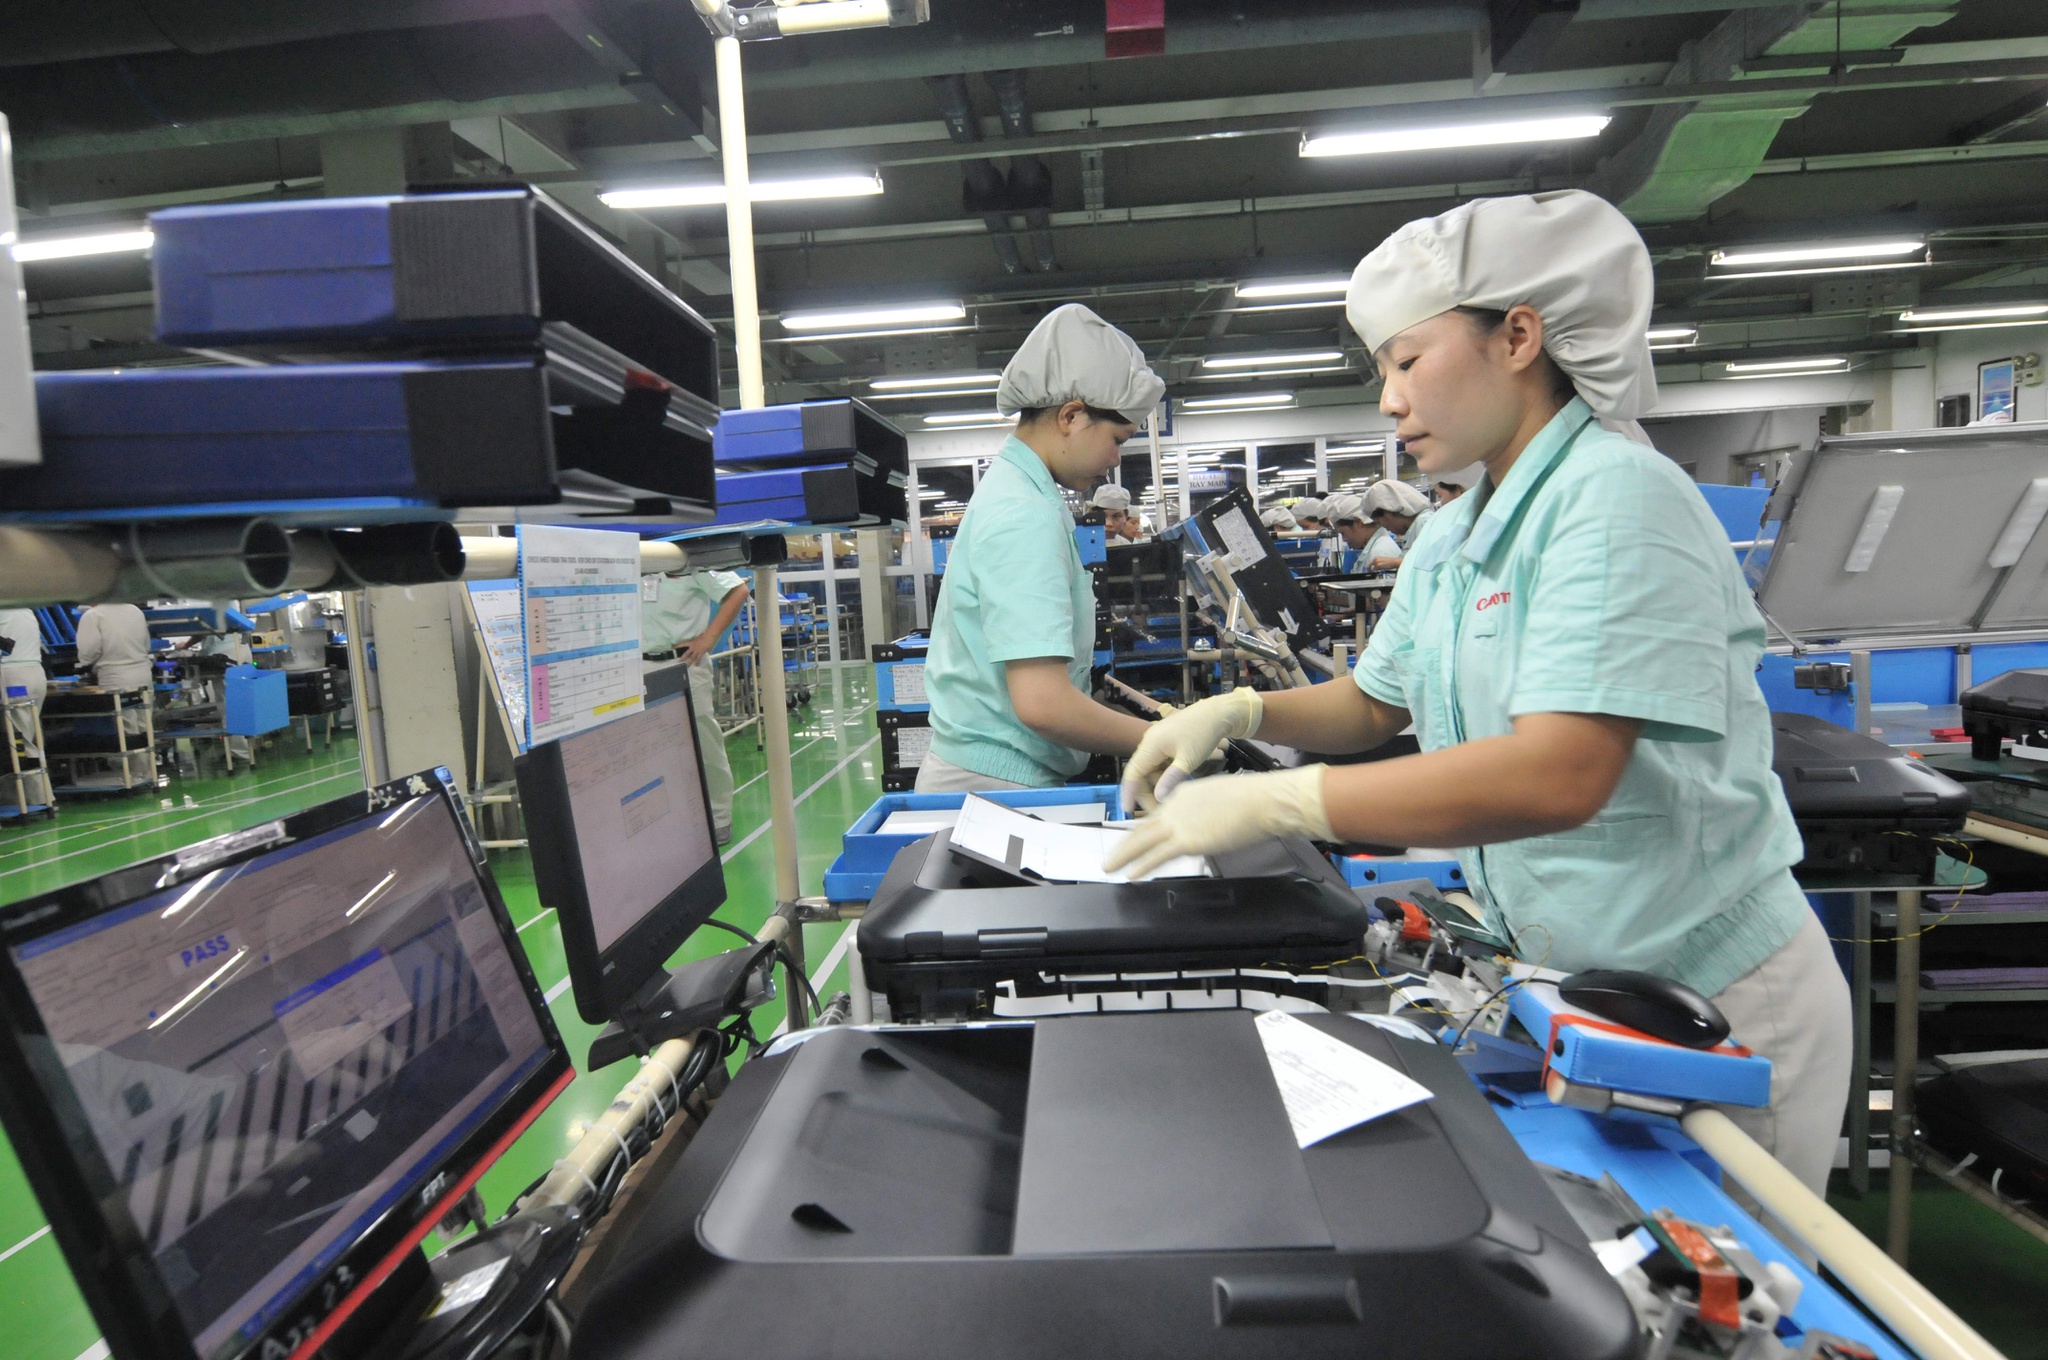 Sau 70 năm phát triển ngành công thương, theo Cục Công nghiệp, tỷ lệ nội địa hóa sản phẩm điện - điện tử Việt Nam chỉ đạt 5-10% /// Ảnh: Ngọc Thắng